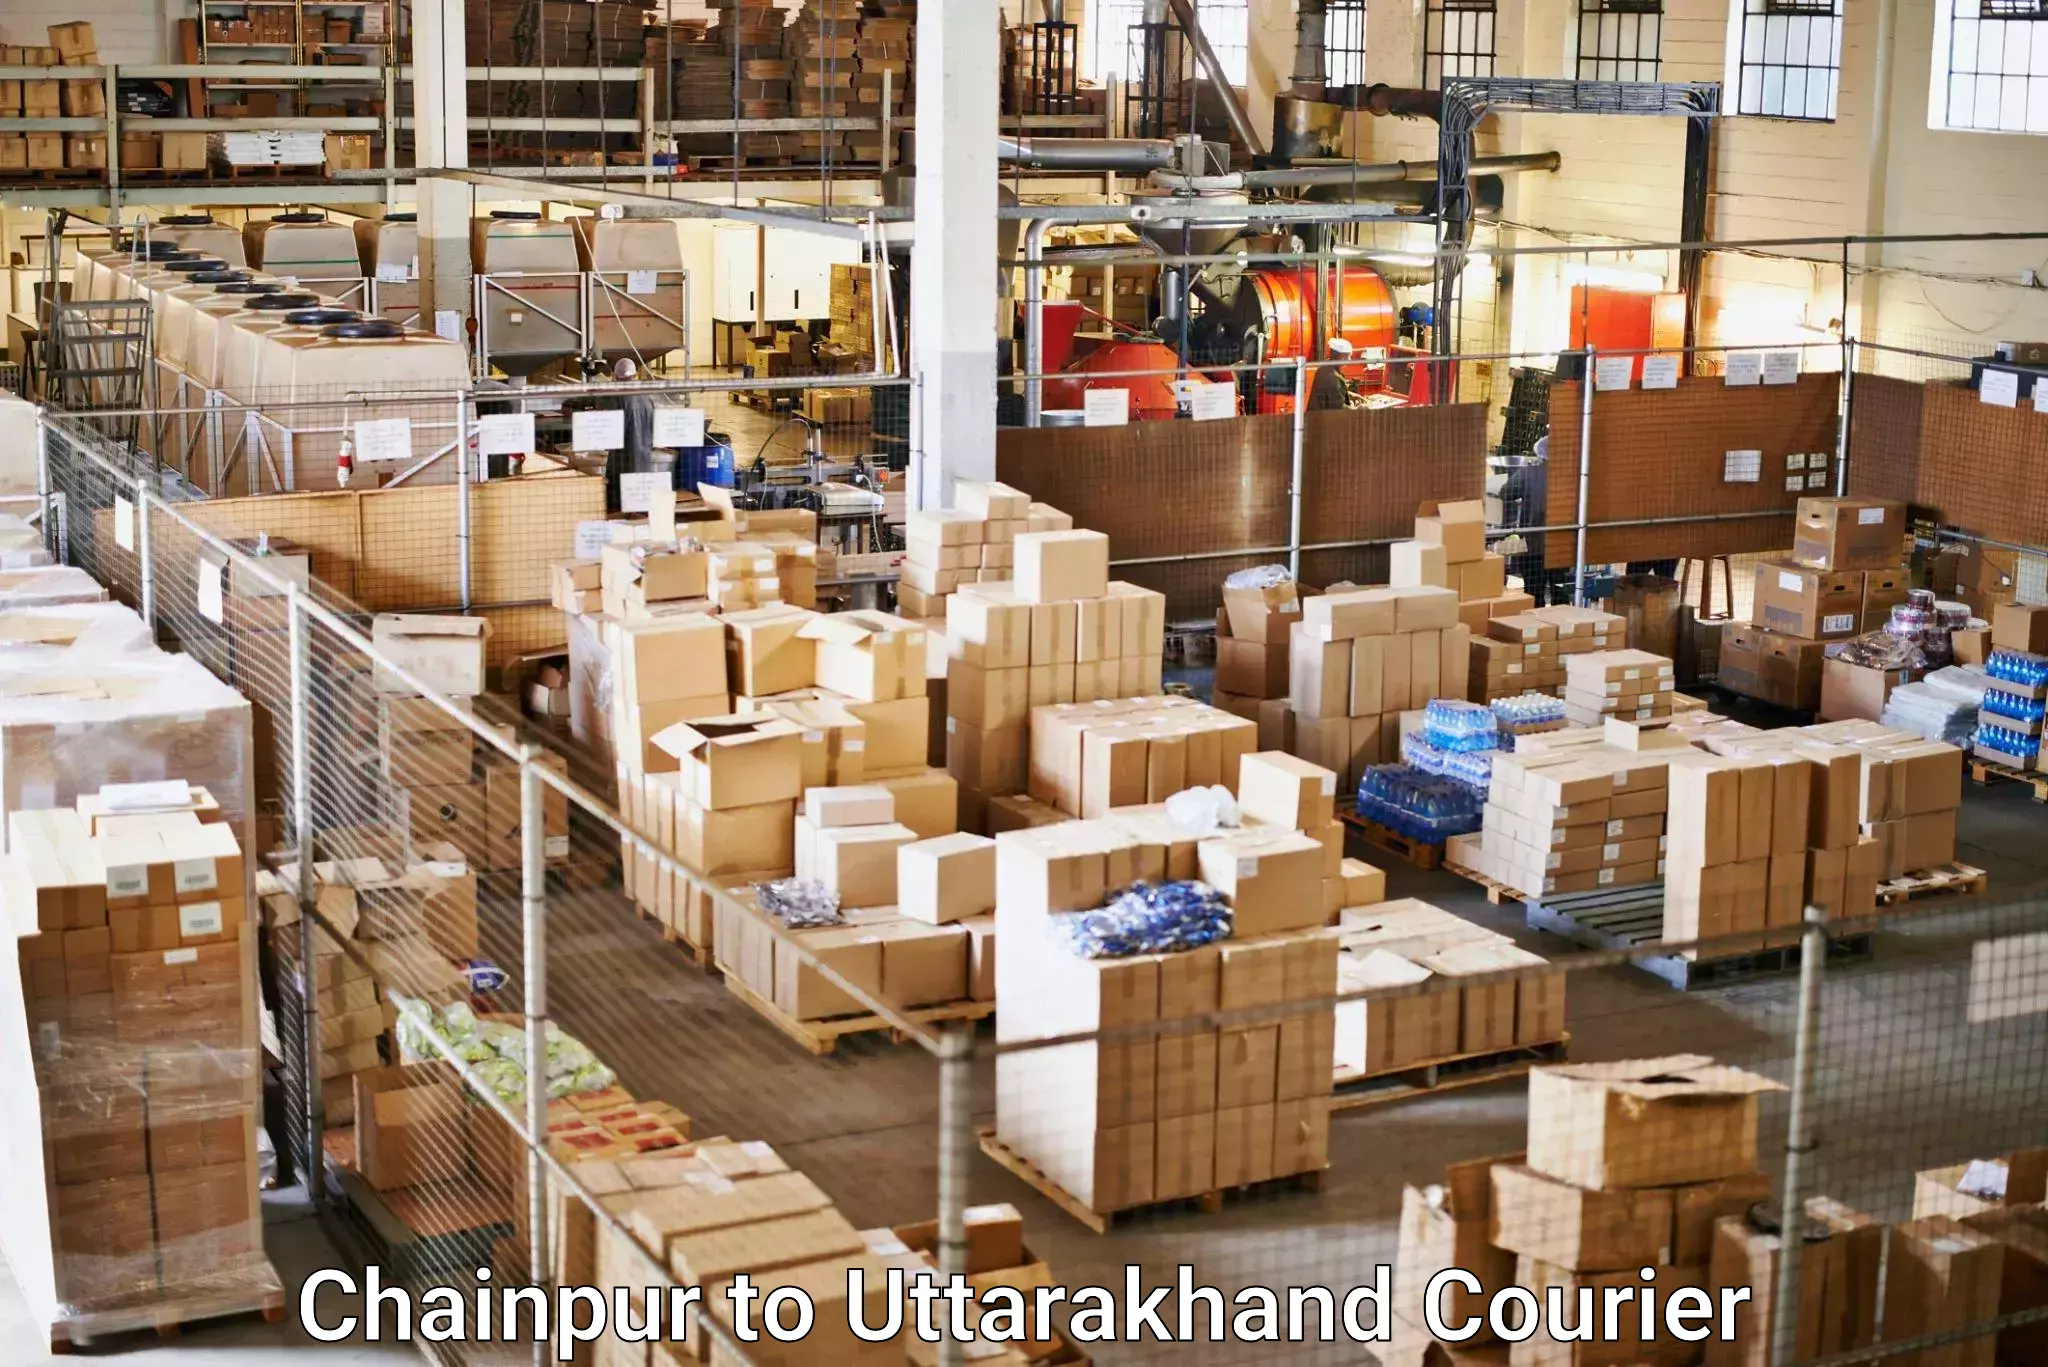 Efficient parcel service Chainpur to Dehradun